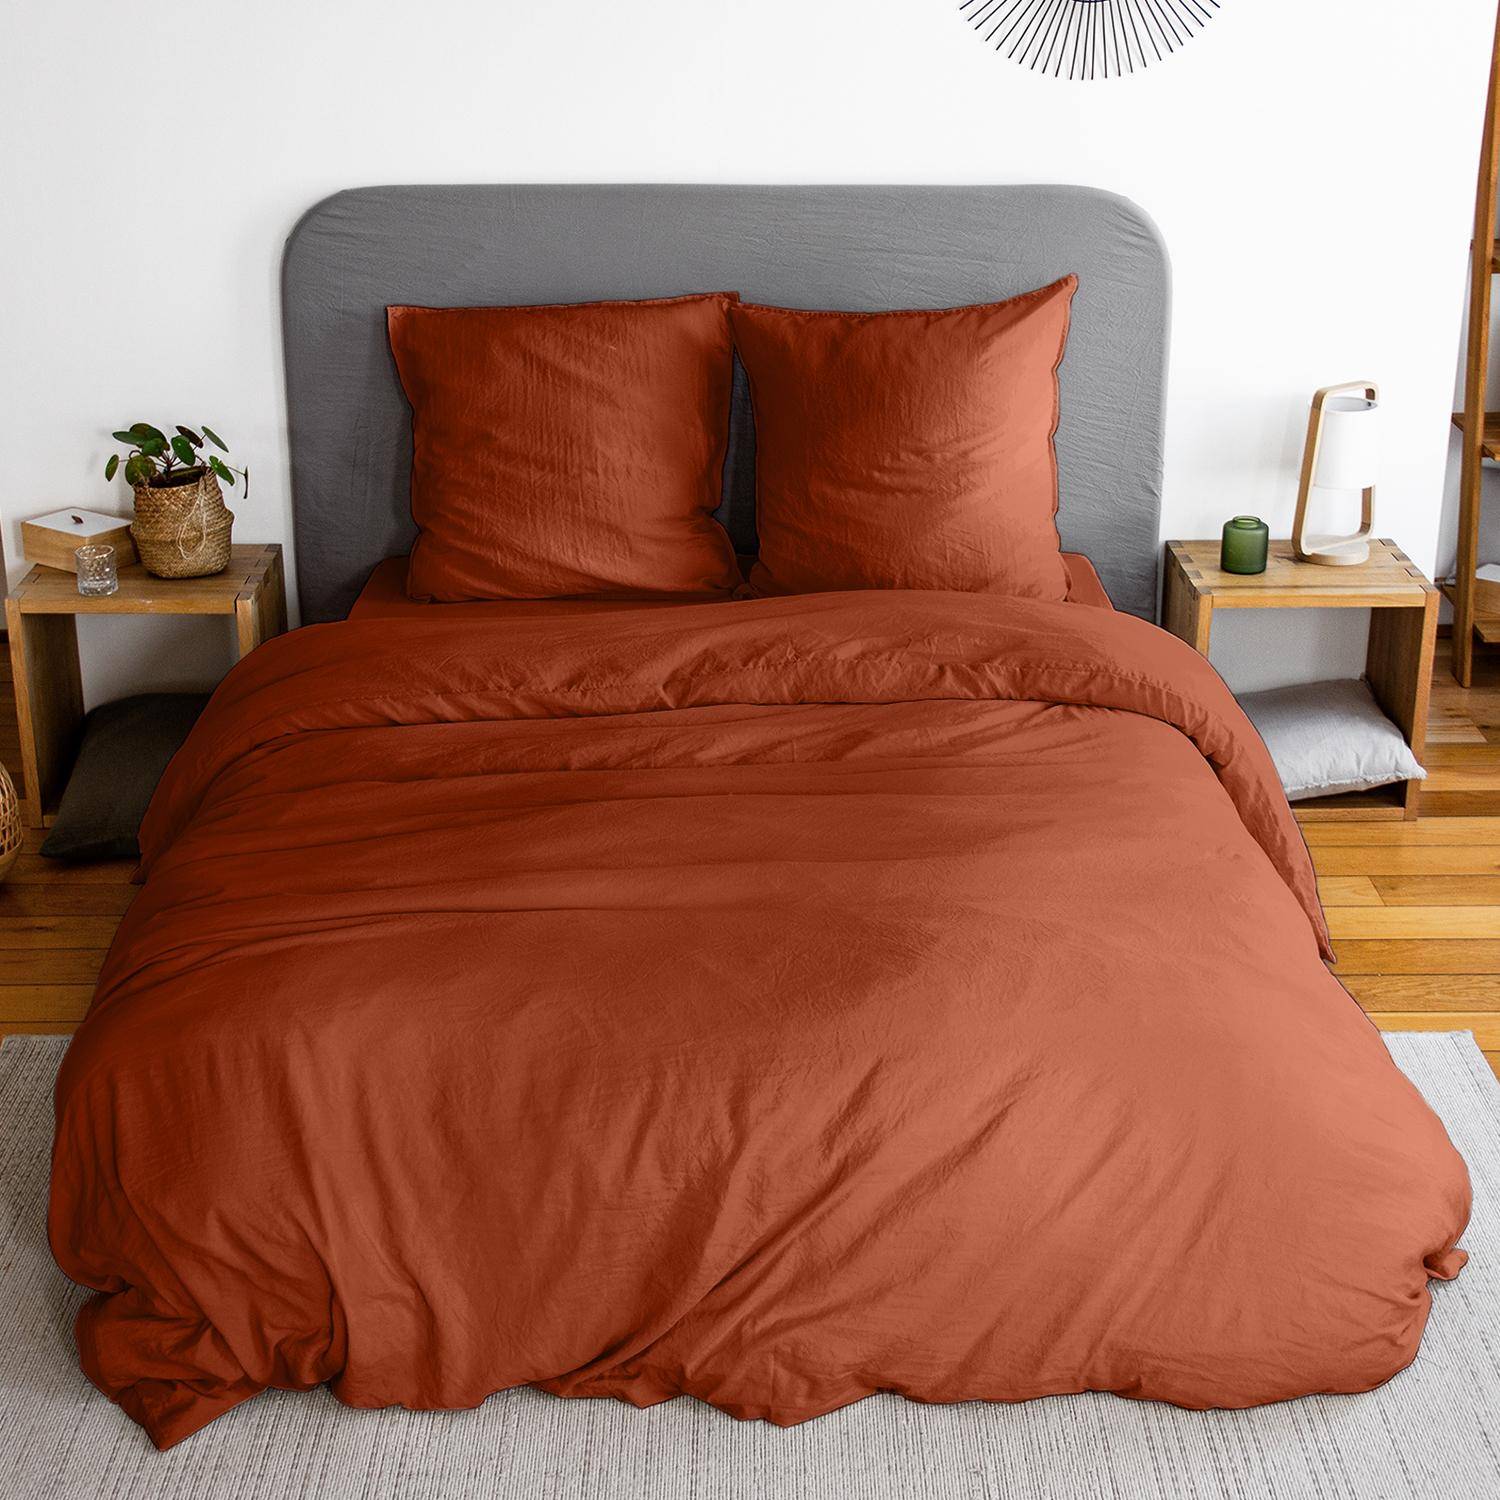 Parure de lit en microfibre lavée, terracotta, 260 x 240cm pour lit 2 places avec 1 housse de couette et 2 taies d'oreillers Photo1